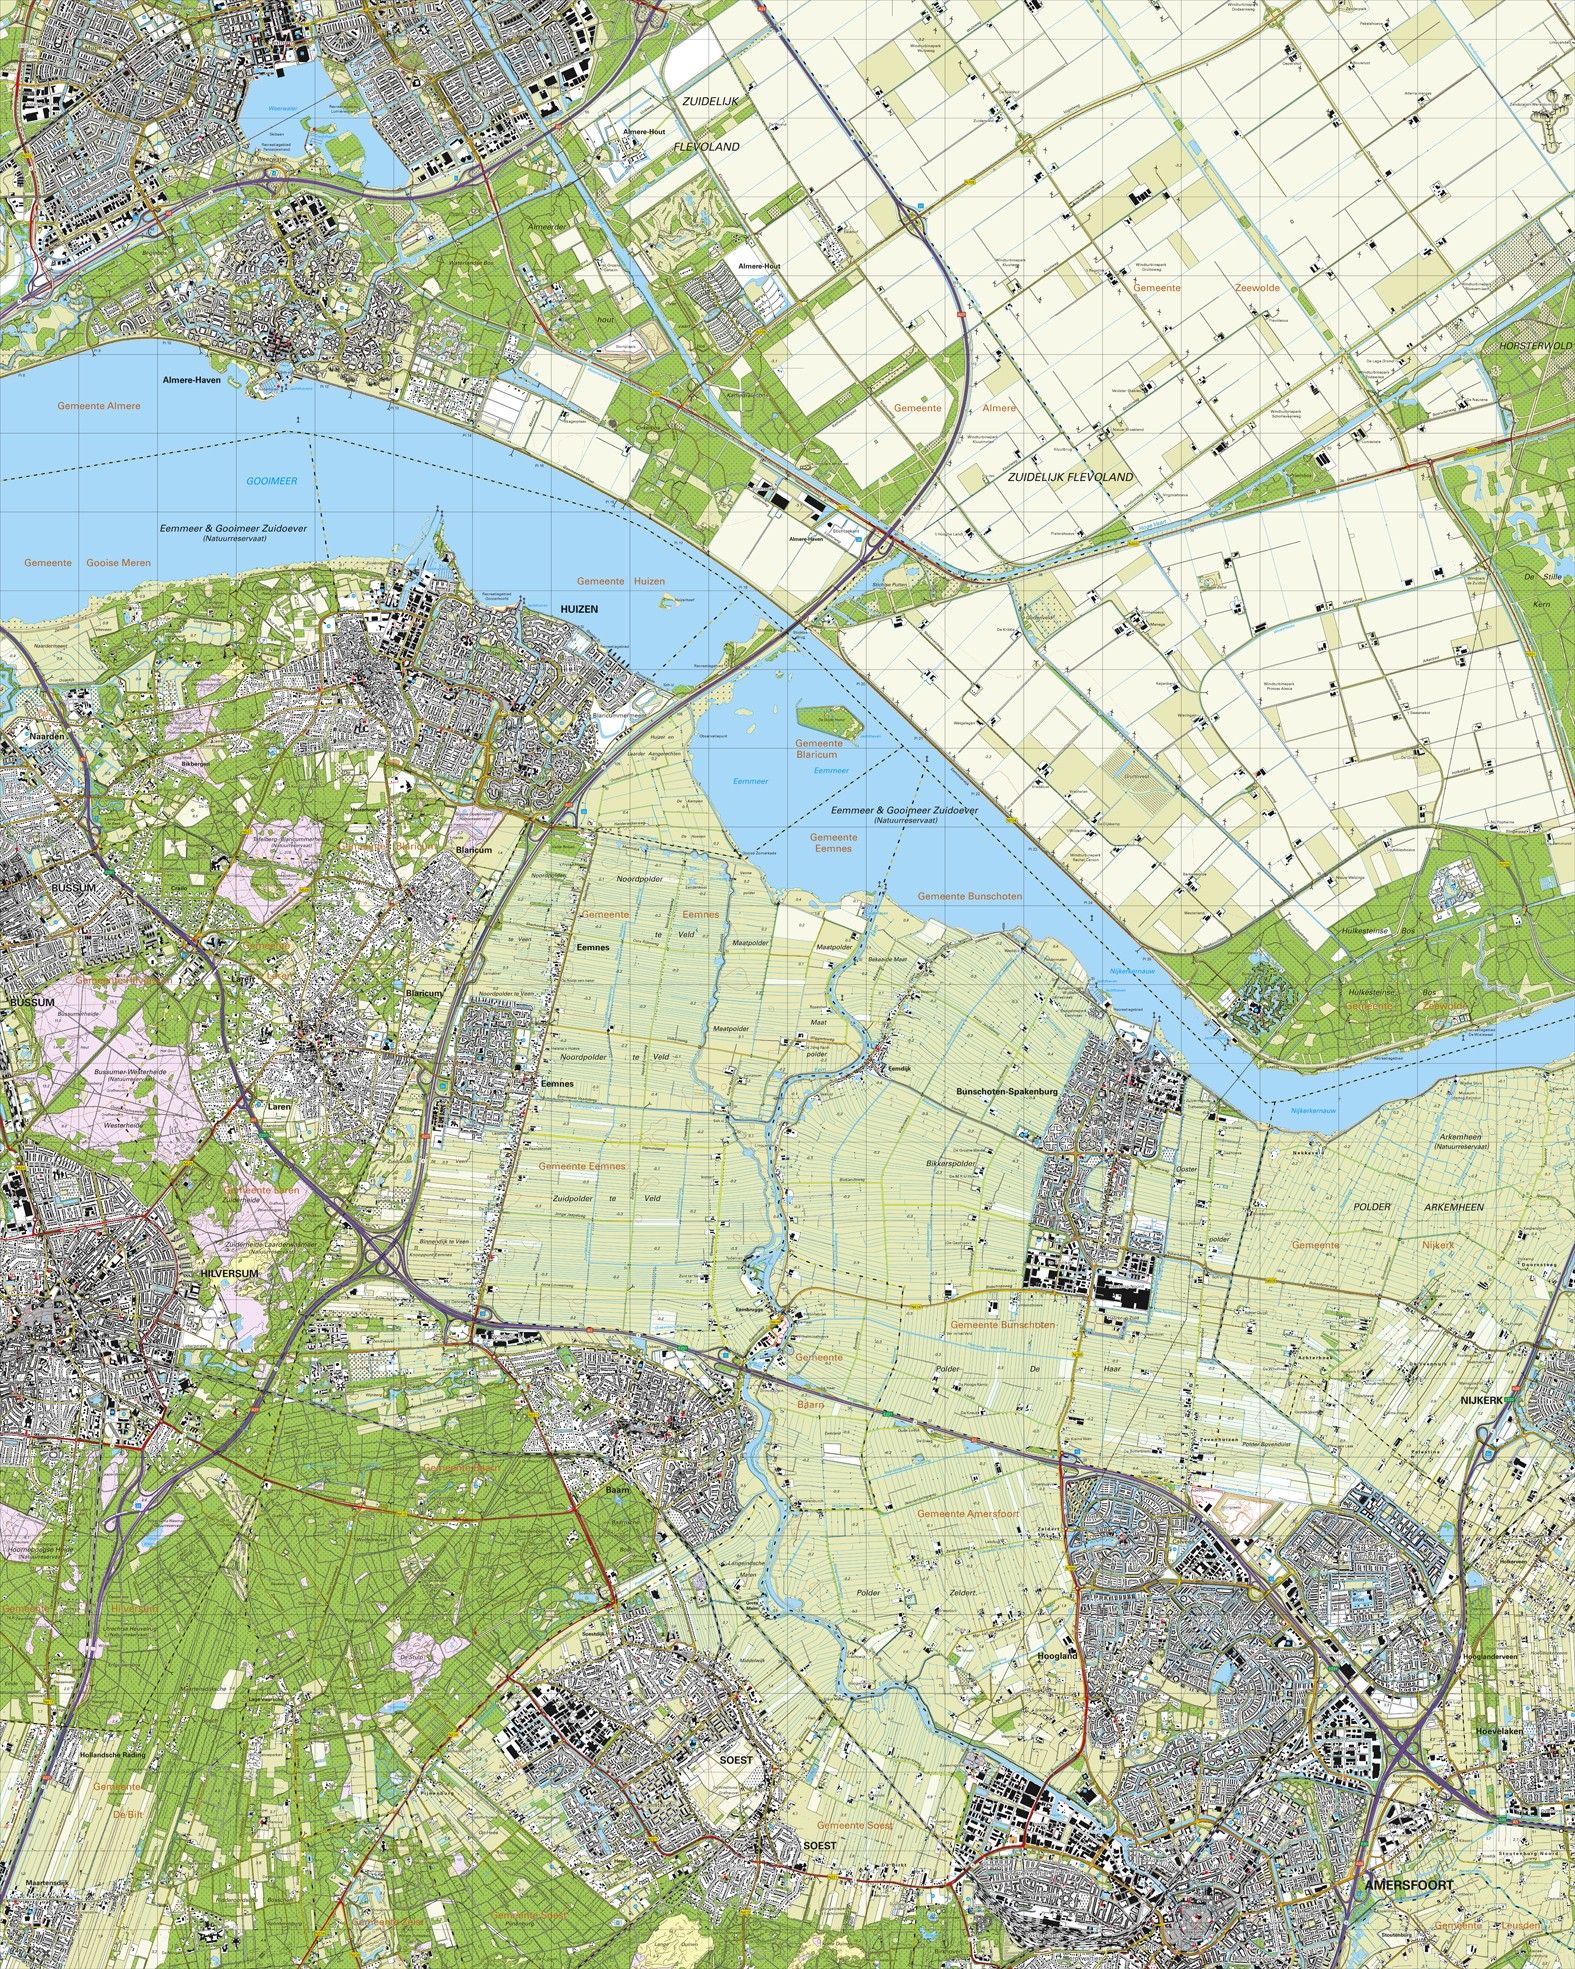 Topografische kaart schaal 1:25.000 (Almere, Huizen, Hilversum, Baarn, Amersfoort, Soest)